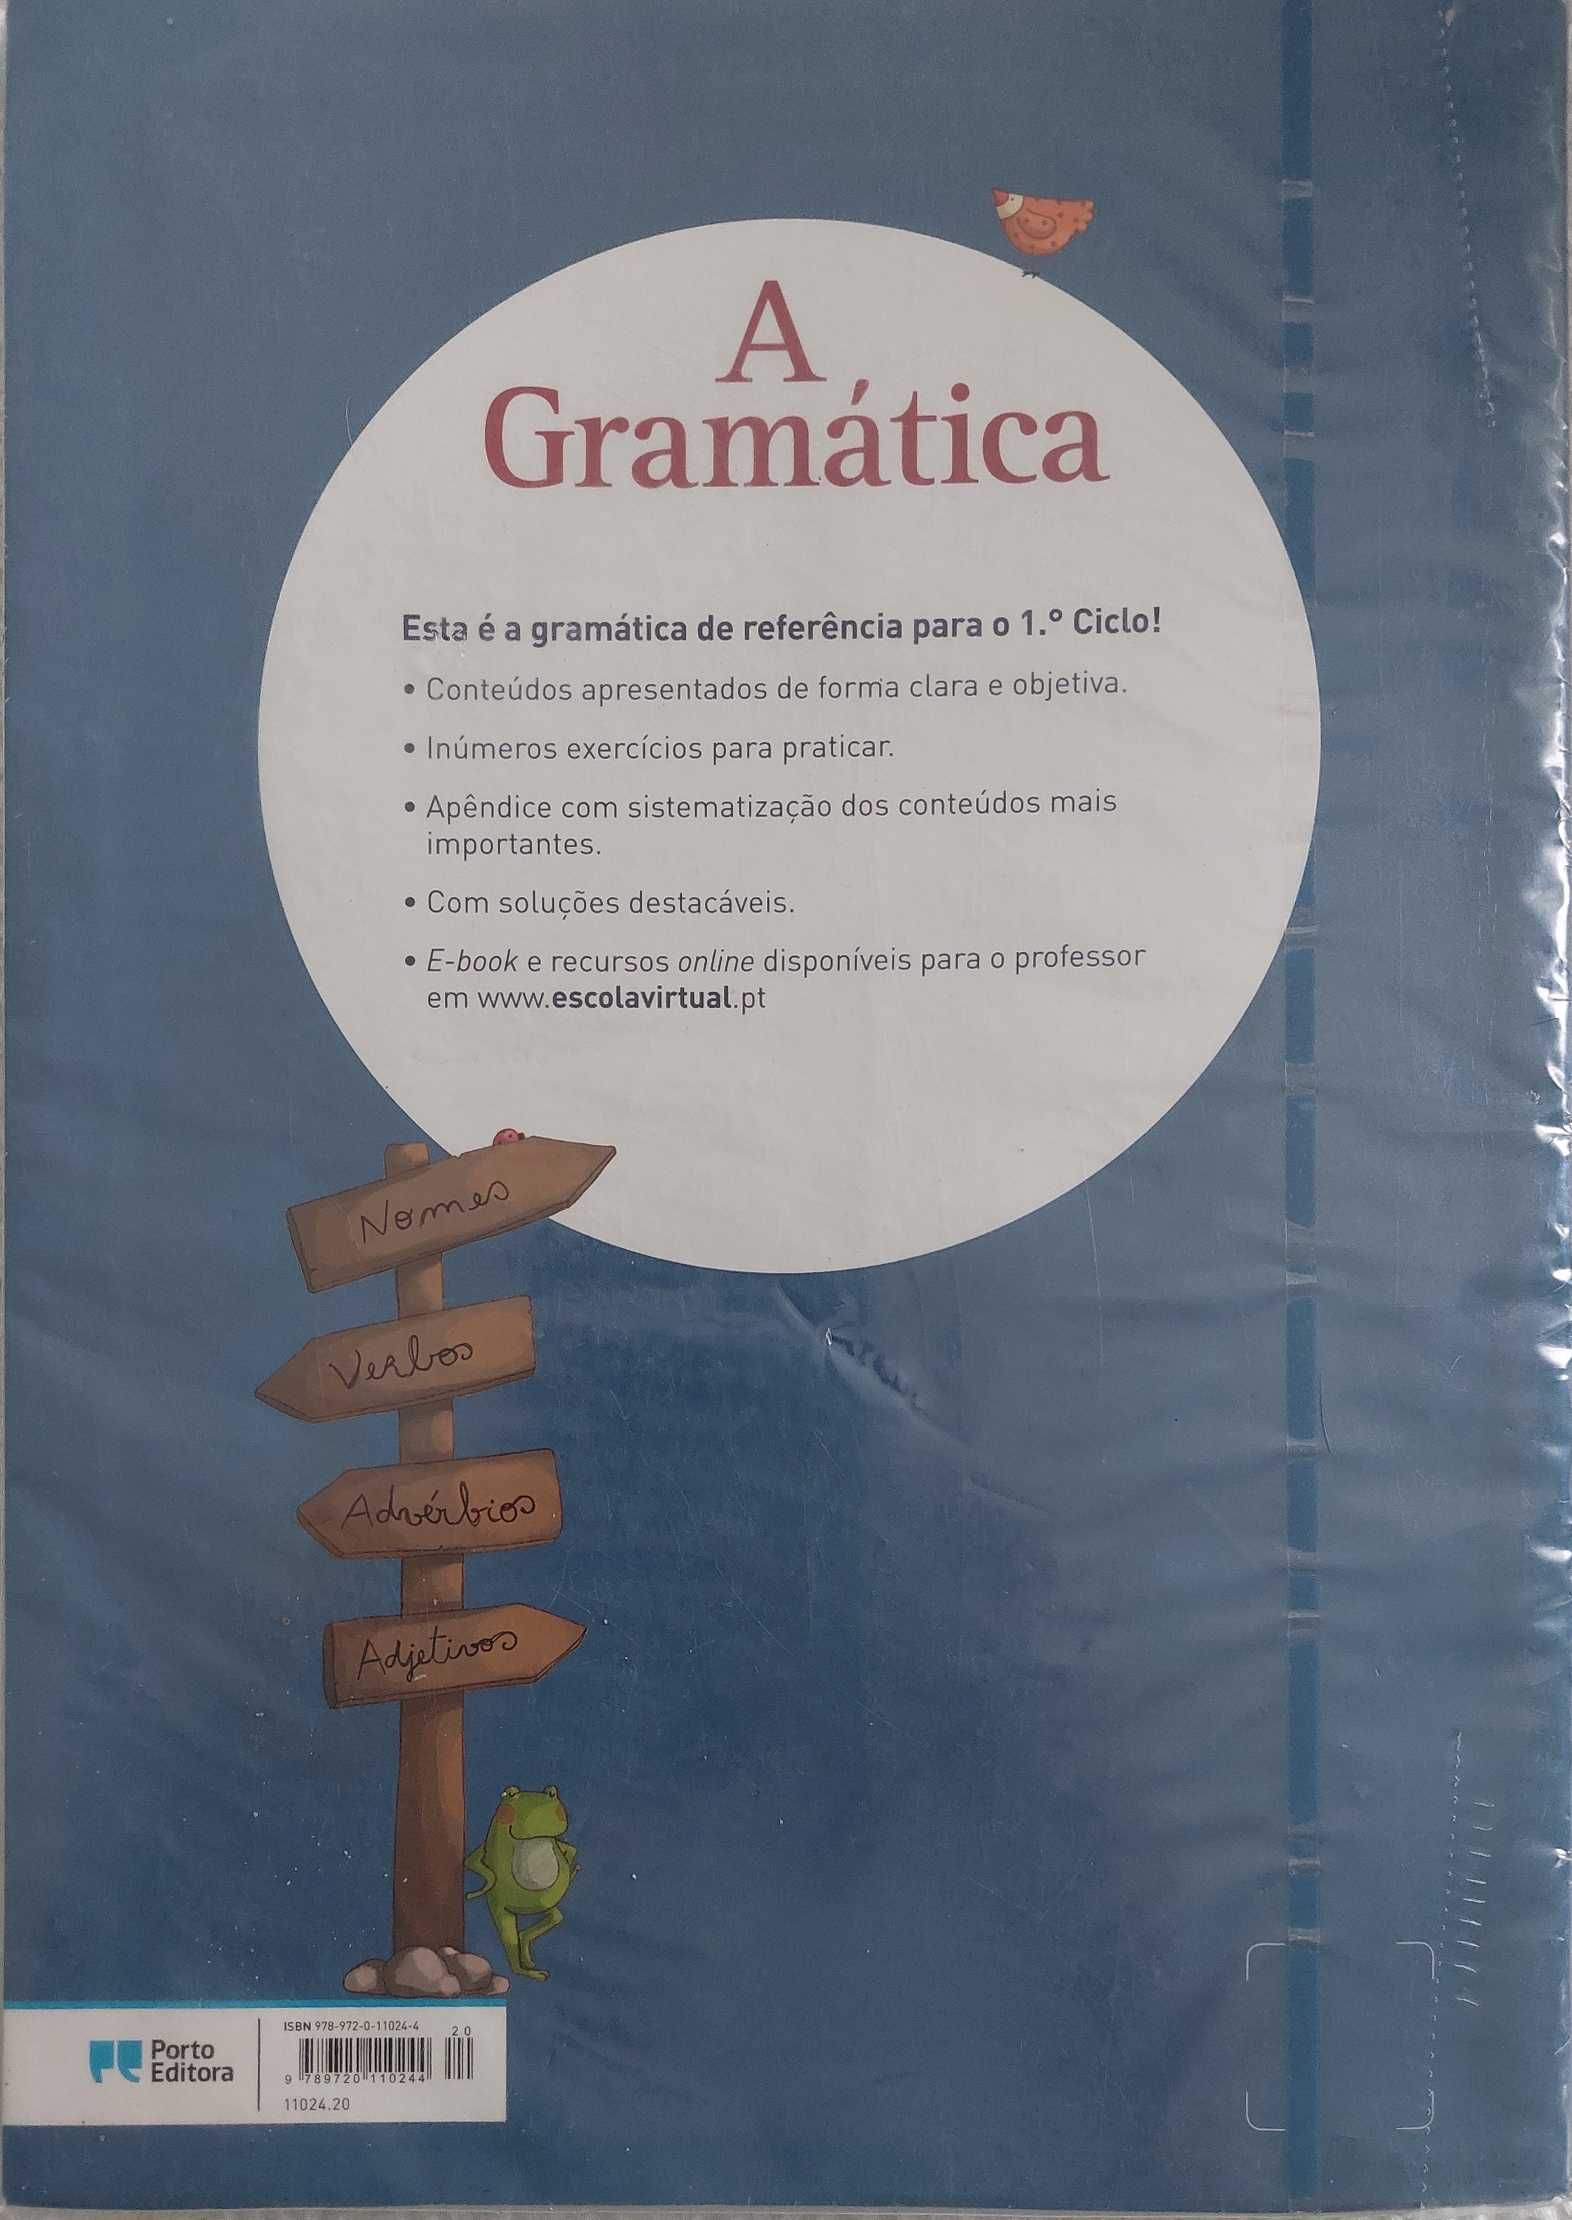 A Gramática - Português 1°Ciclo